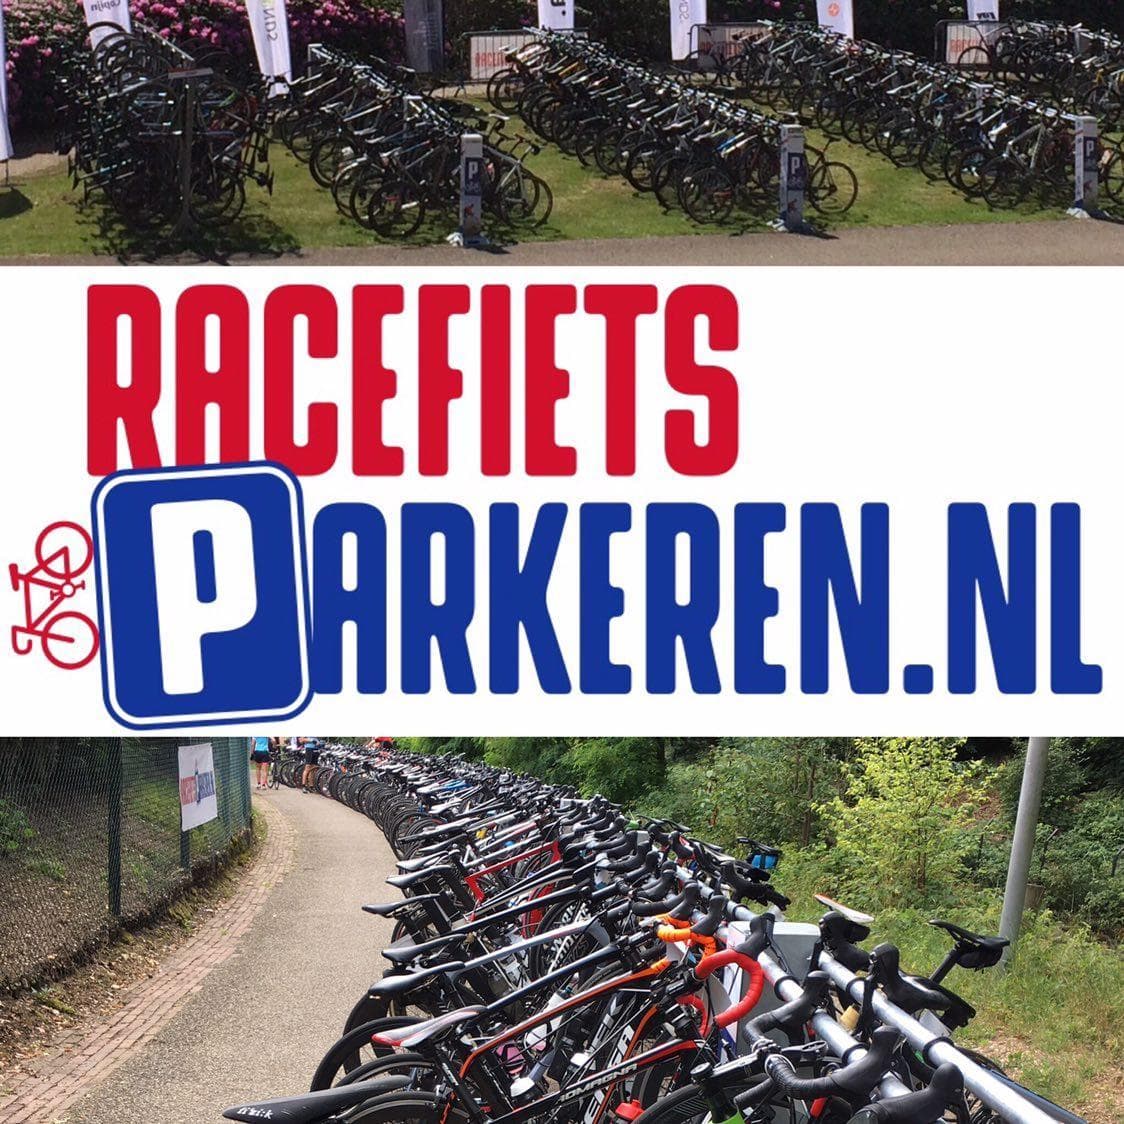 Link to sponsor racefietsparkeren.nl